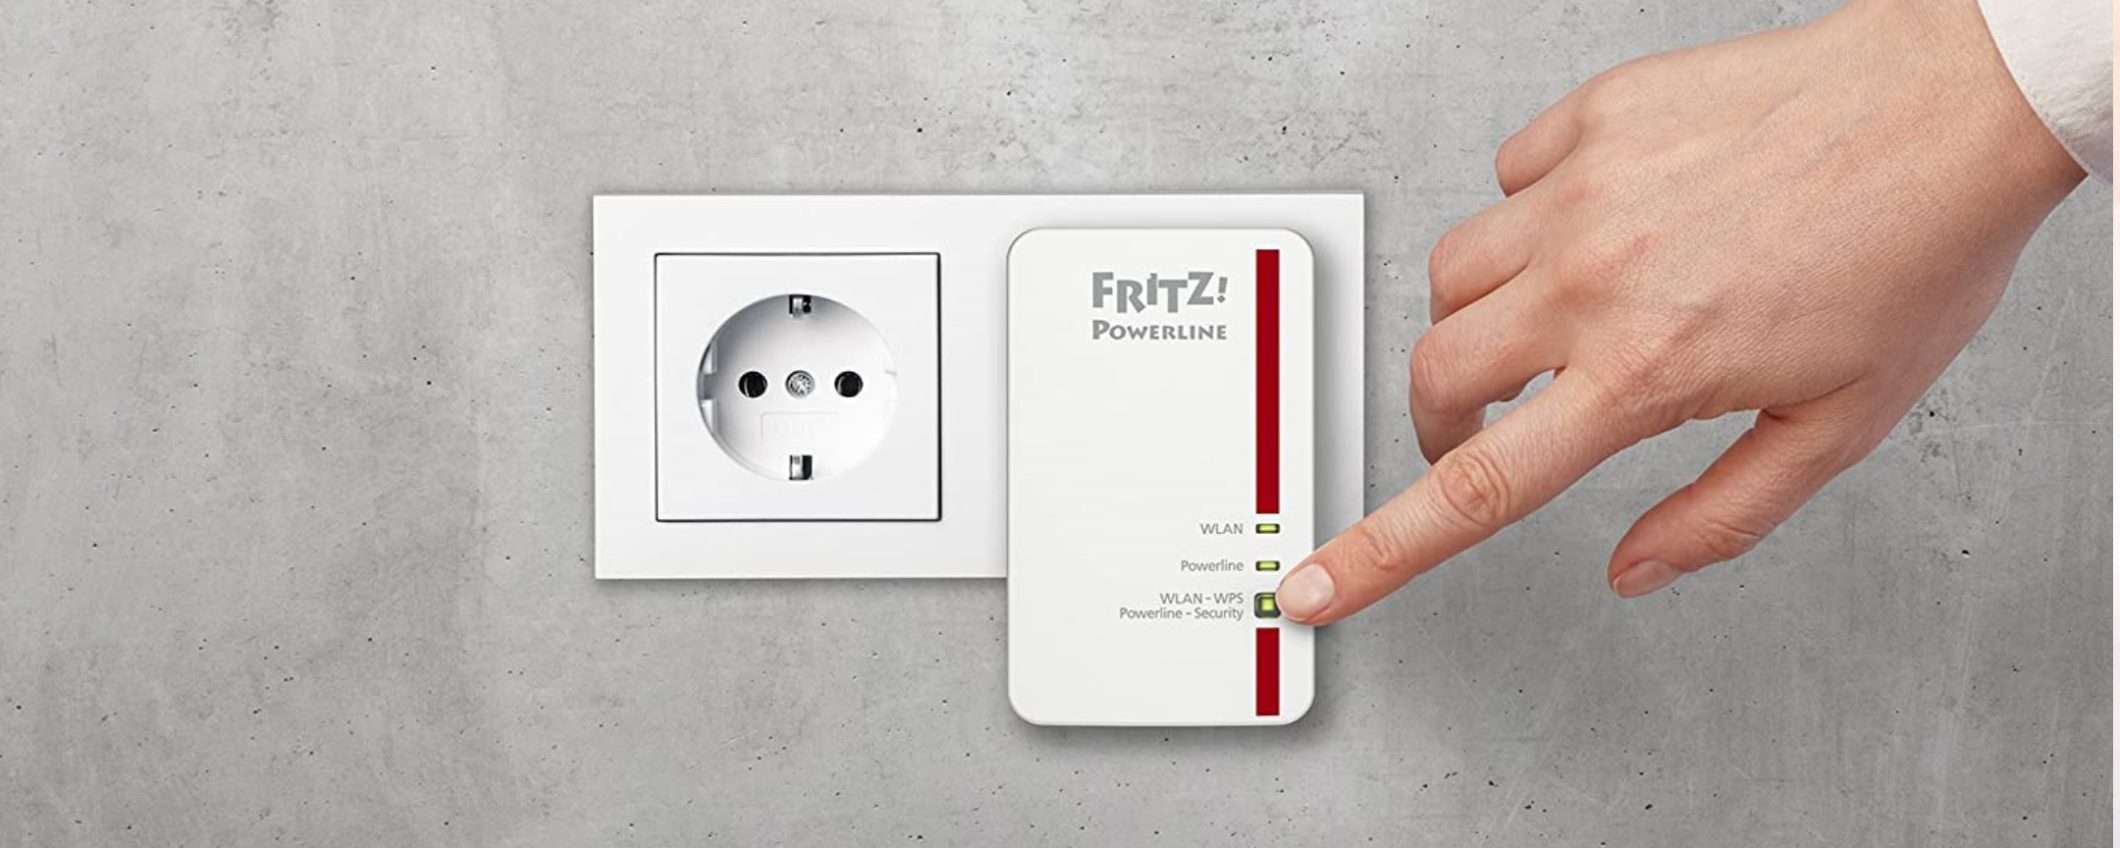 Fritz!Powerline 1240E: porta la Fibra in ogni stanza senza interventi